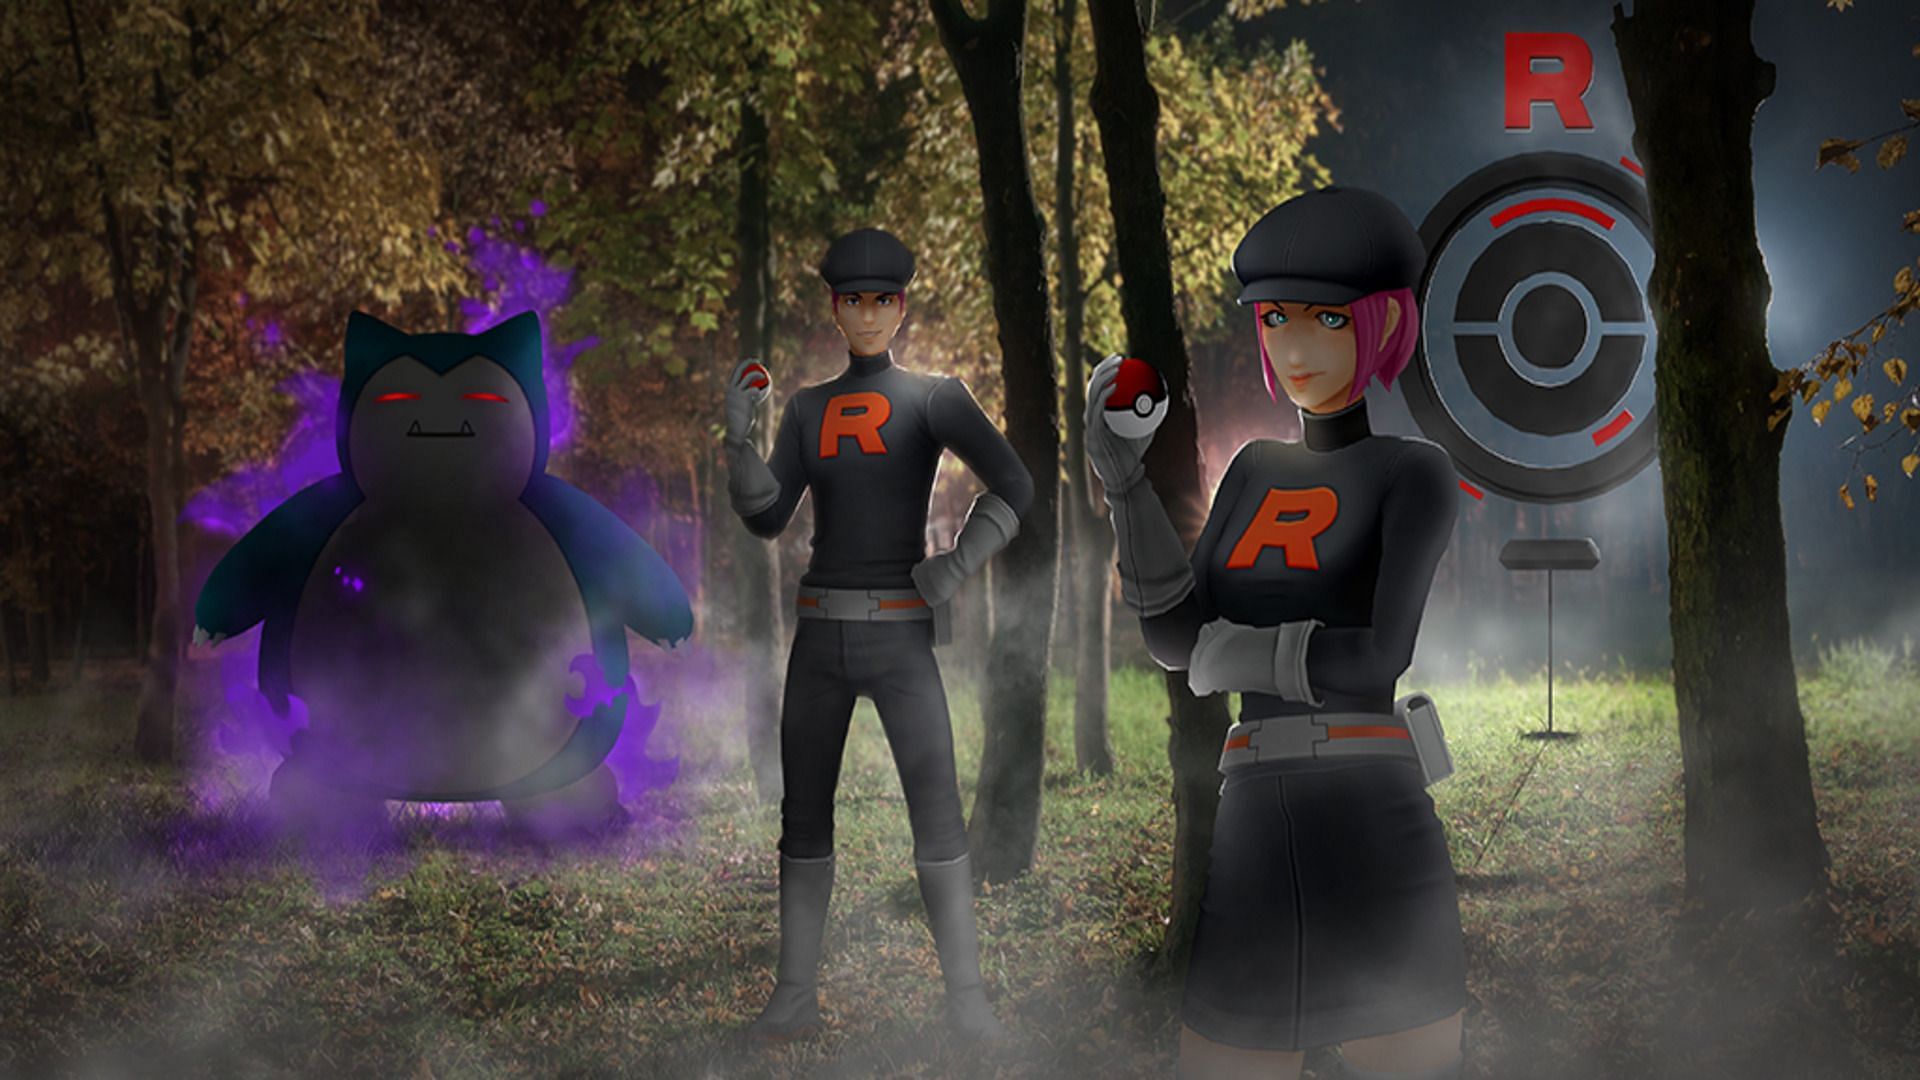 Official artwork for Team GO Rocket (Image via Niantic)